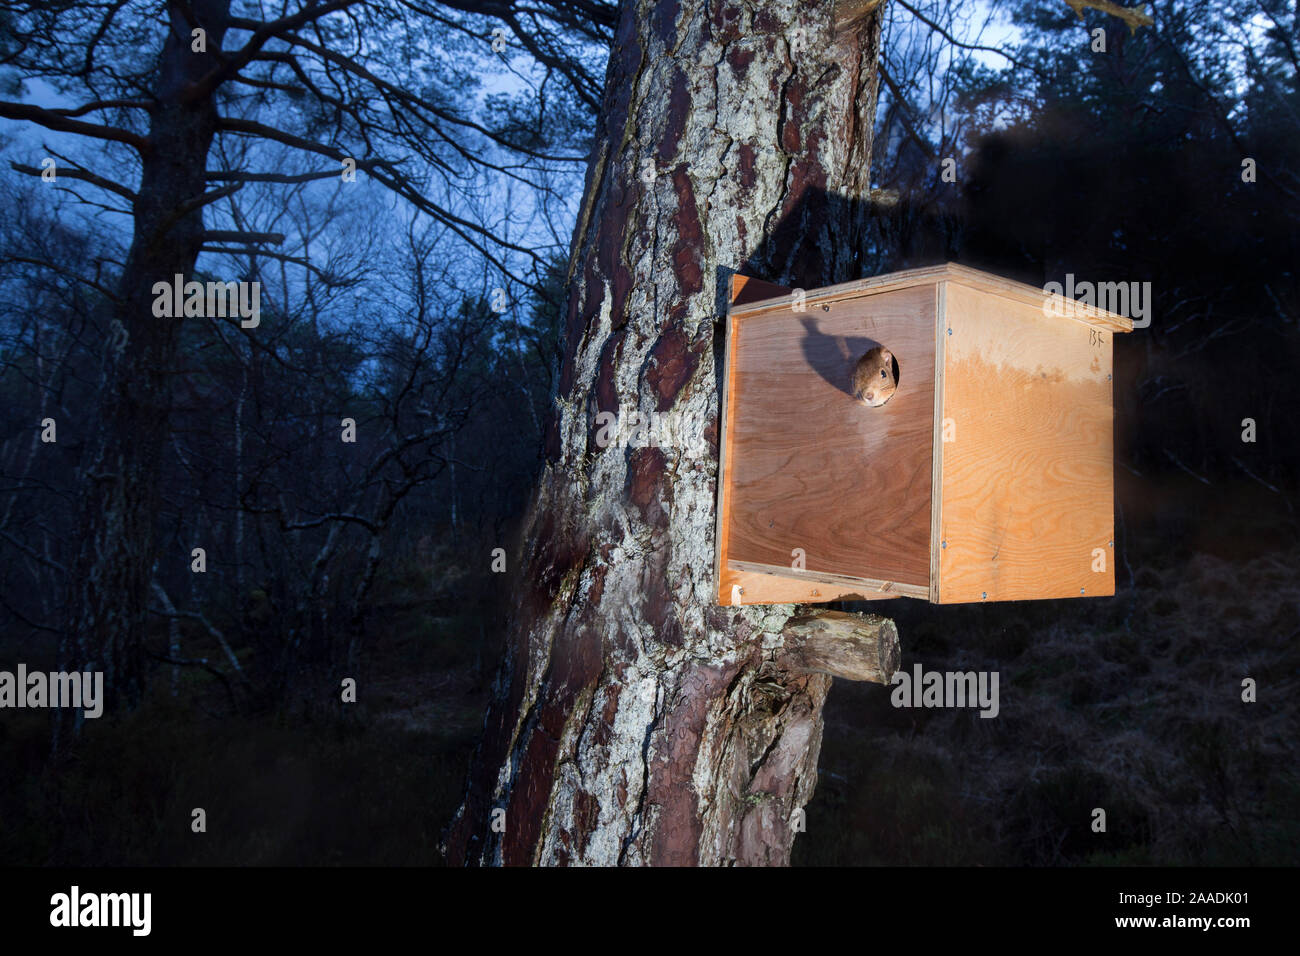 La fotocamera remota colpo di scoiattolo rosso (Sciurus vulgaris) emergente dalla casella di transito in seguito alla sua traslocazione da Murena a Plockton, Scotland, Regno Unito. Vincitore della serie di documentari Categoria della British Wildlife Photography Awards (BWPA) 2017. Foto Stock